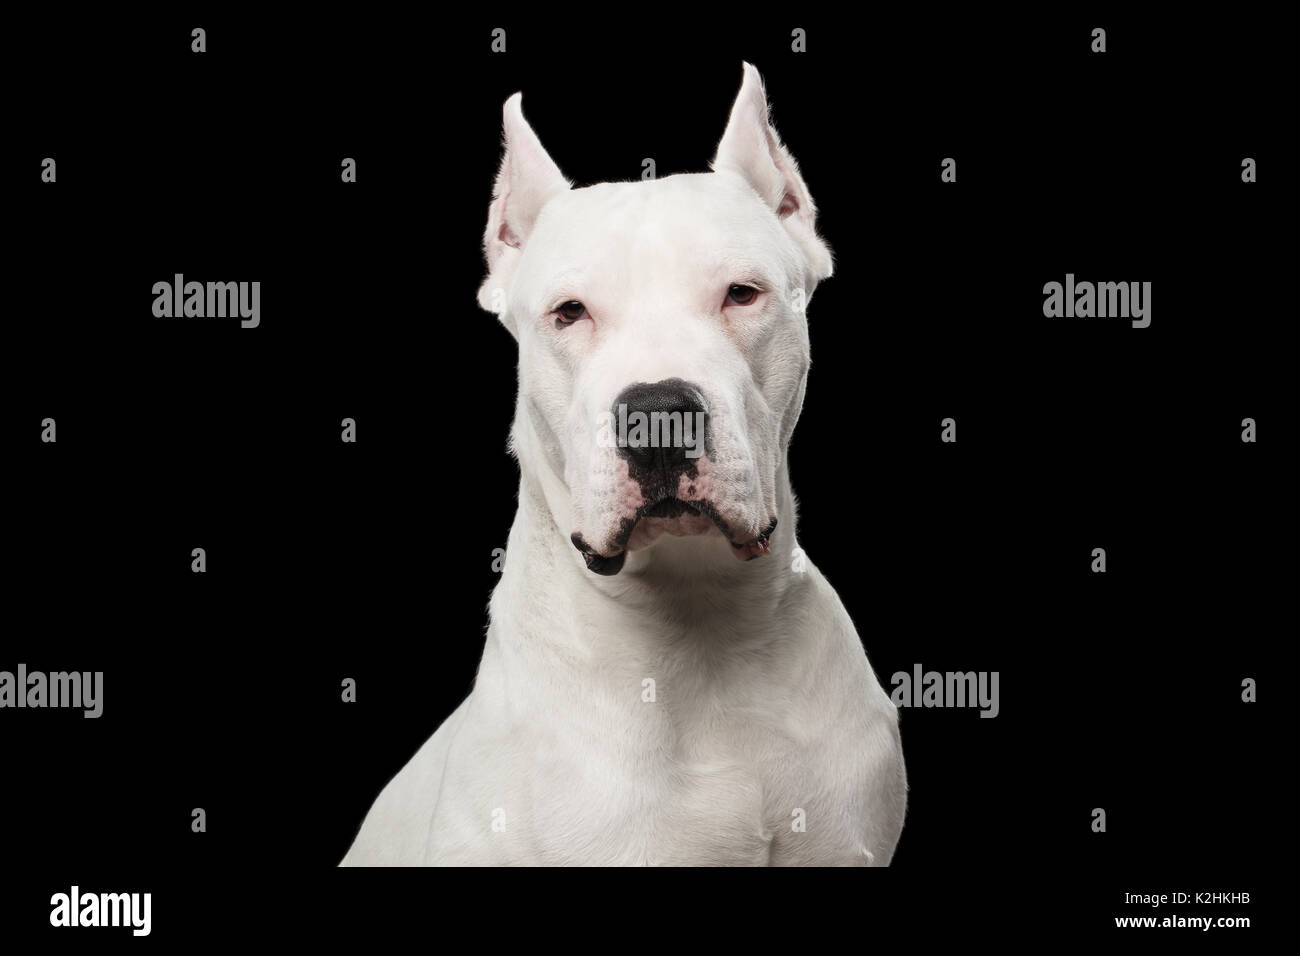 Retrato del Dogo Argentino de perro aislado sobre fondo negro Fotografía de Alamy